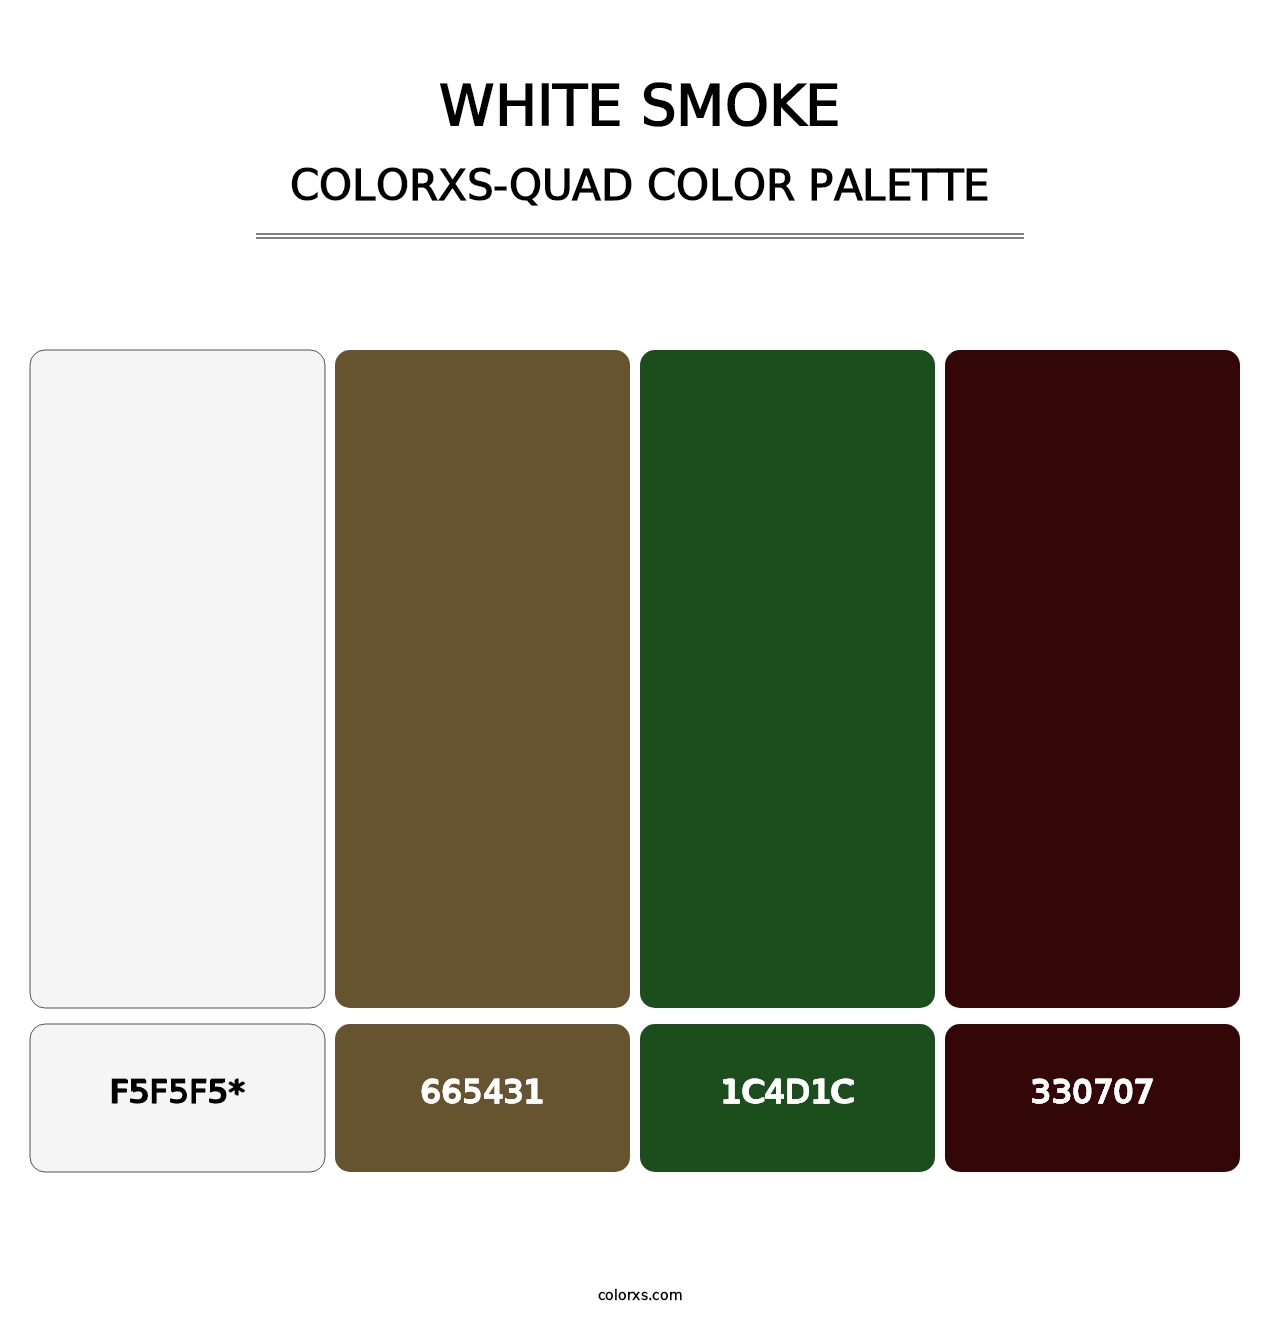 White Smoke - Colorxs Quad Palette